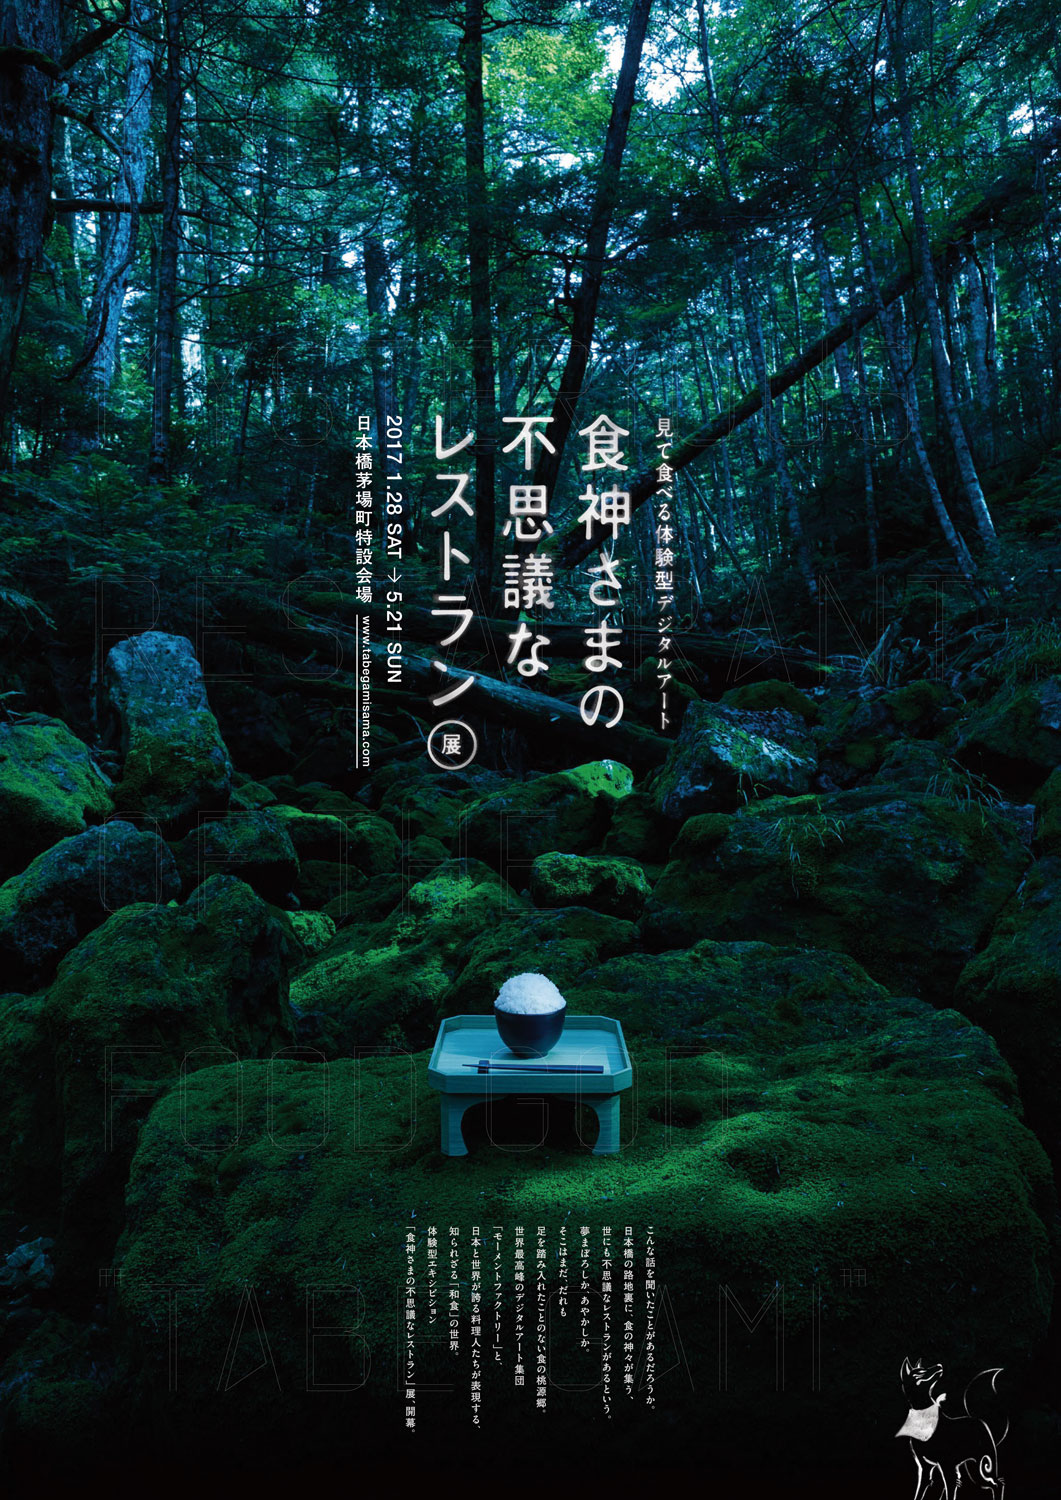 乃木坂46がボイスキャストで参加、「見て食べる体験型デジタルアート『食神さまの不思議なレストラン』展」が来年開催へ